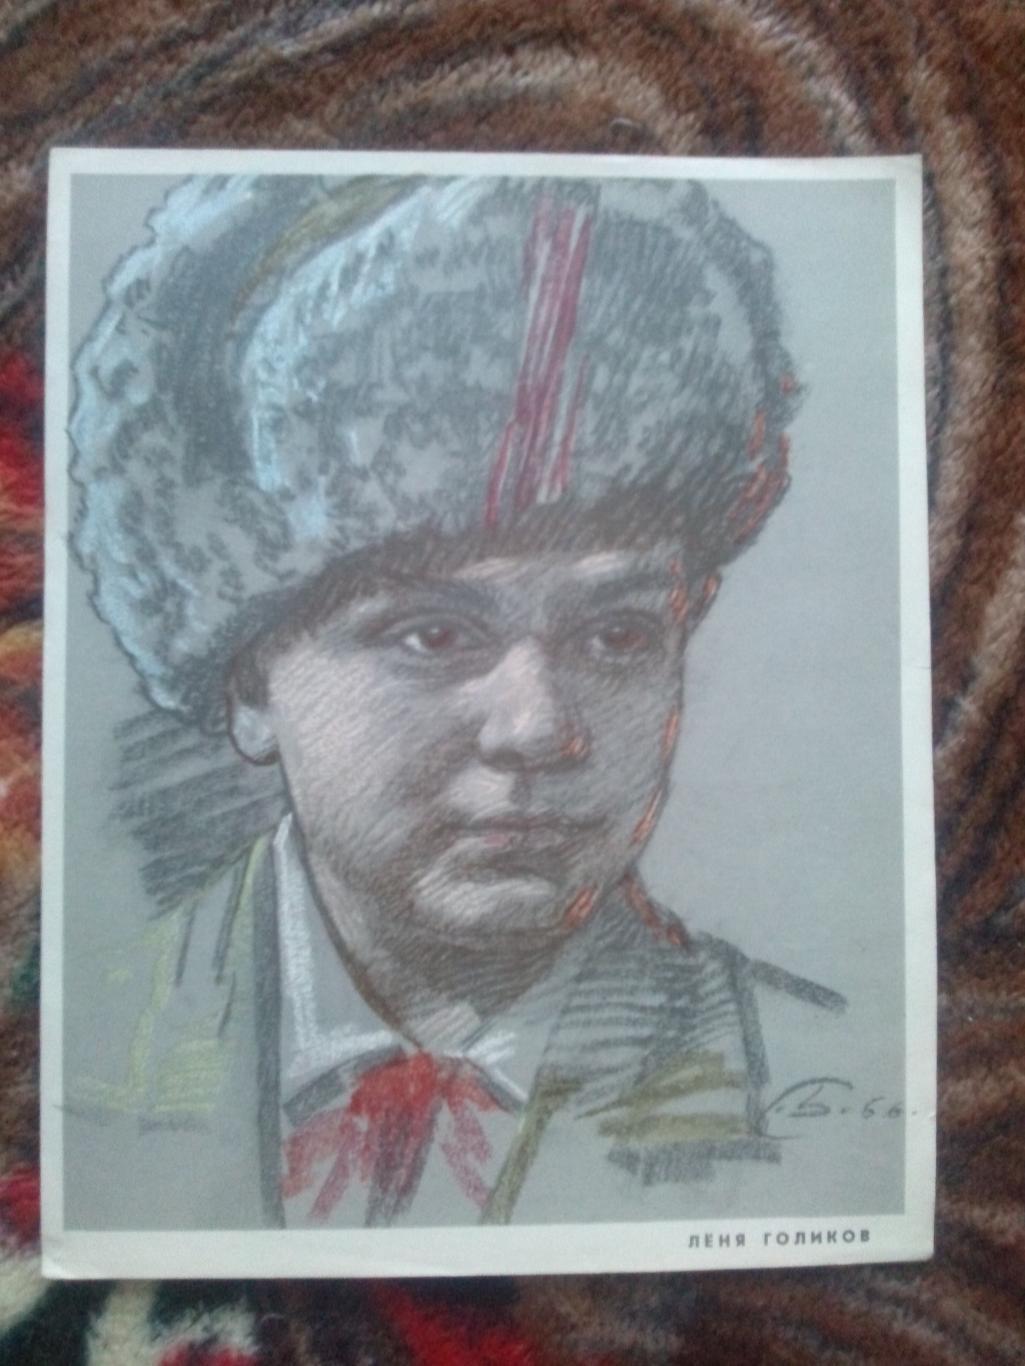 Пионеры-герои (Плакат + брошюра) 1967 г. Леня Голиков (Пионер , агитация) 1